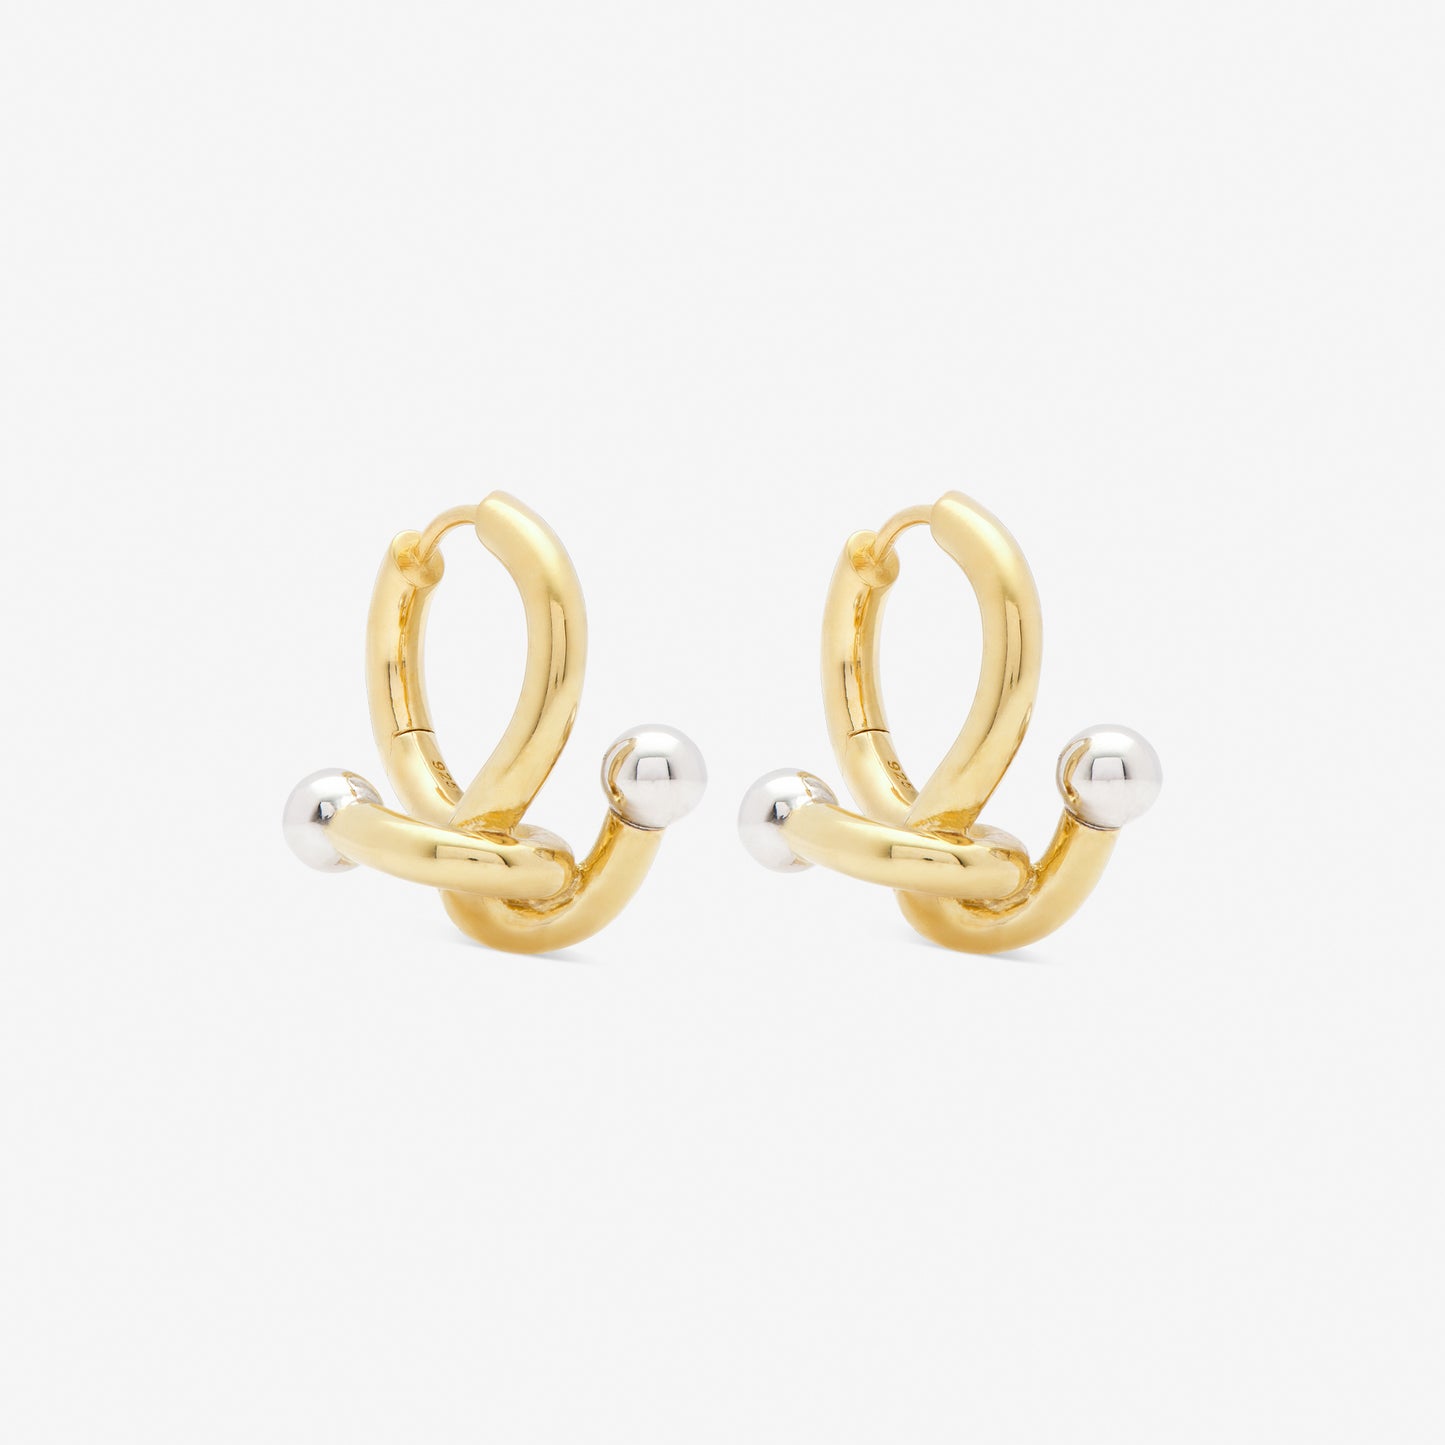 falcate earrings gold